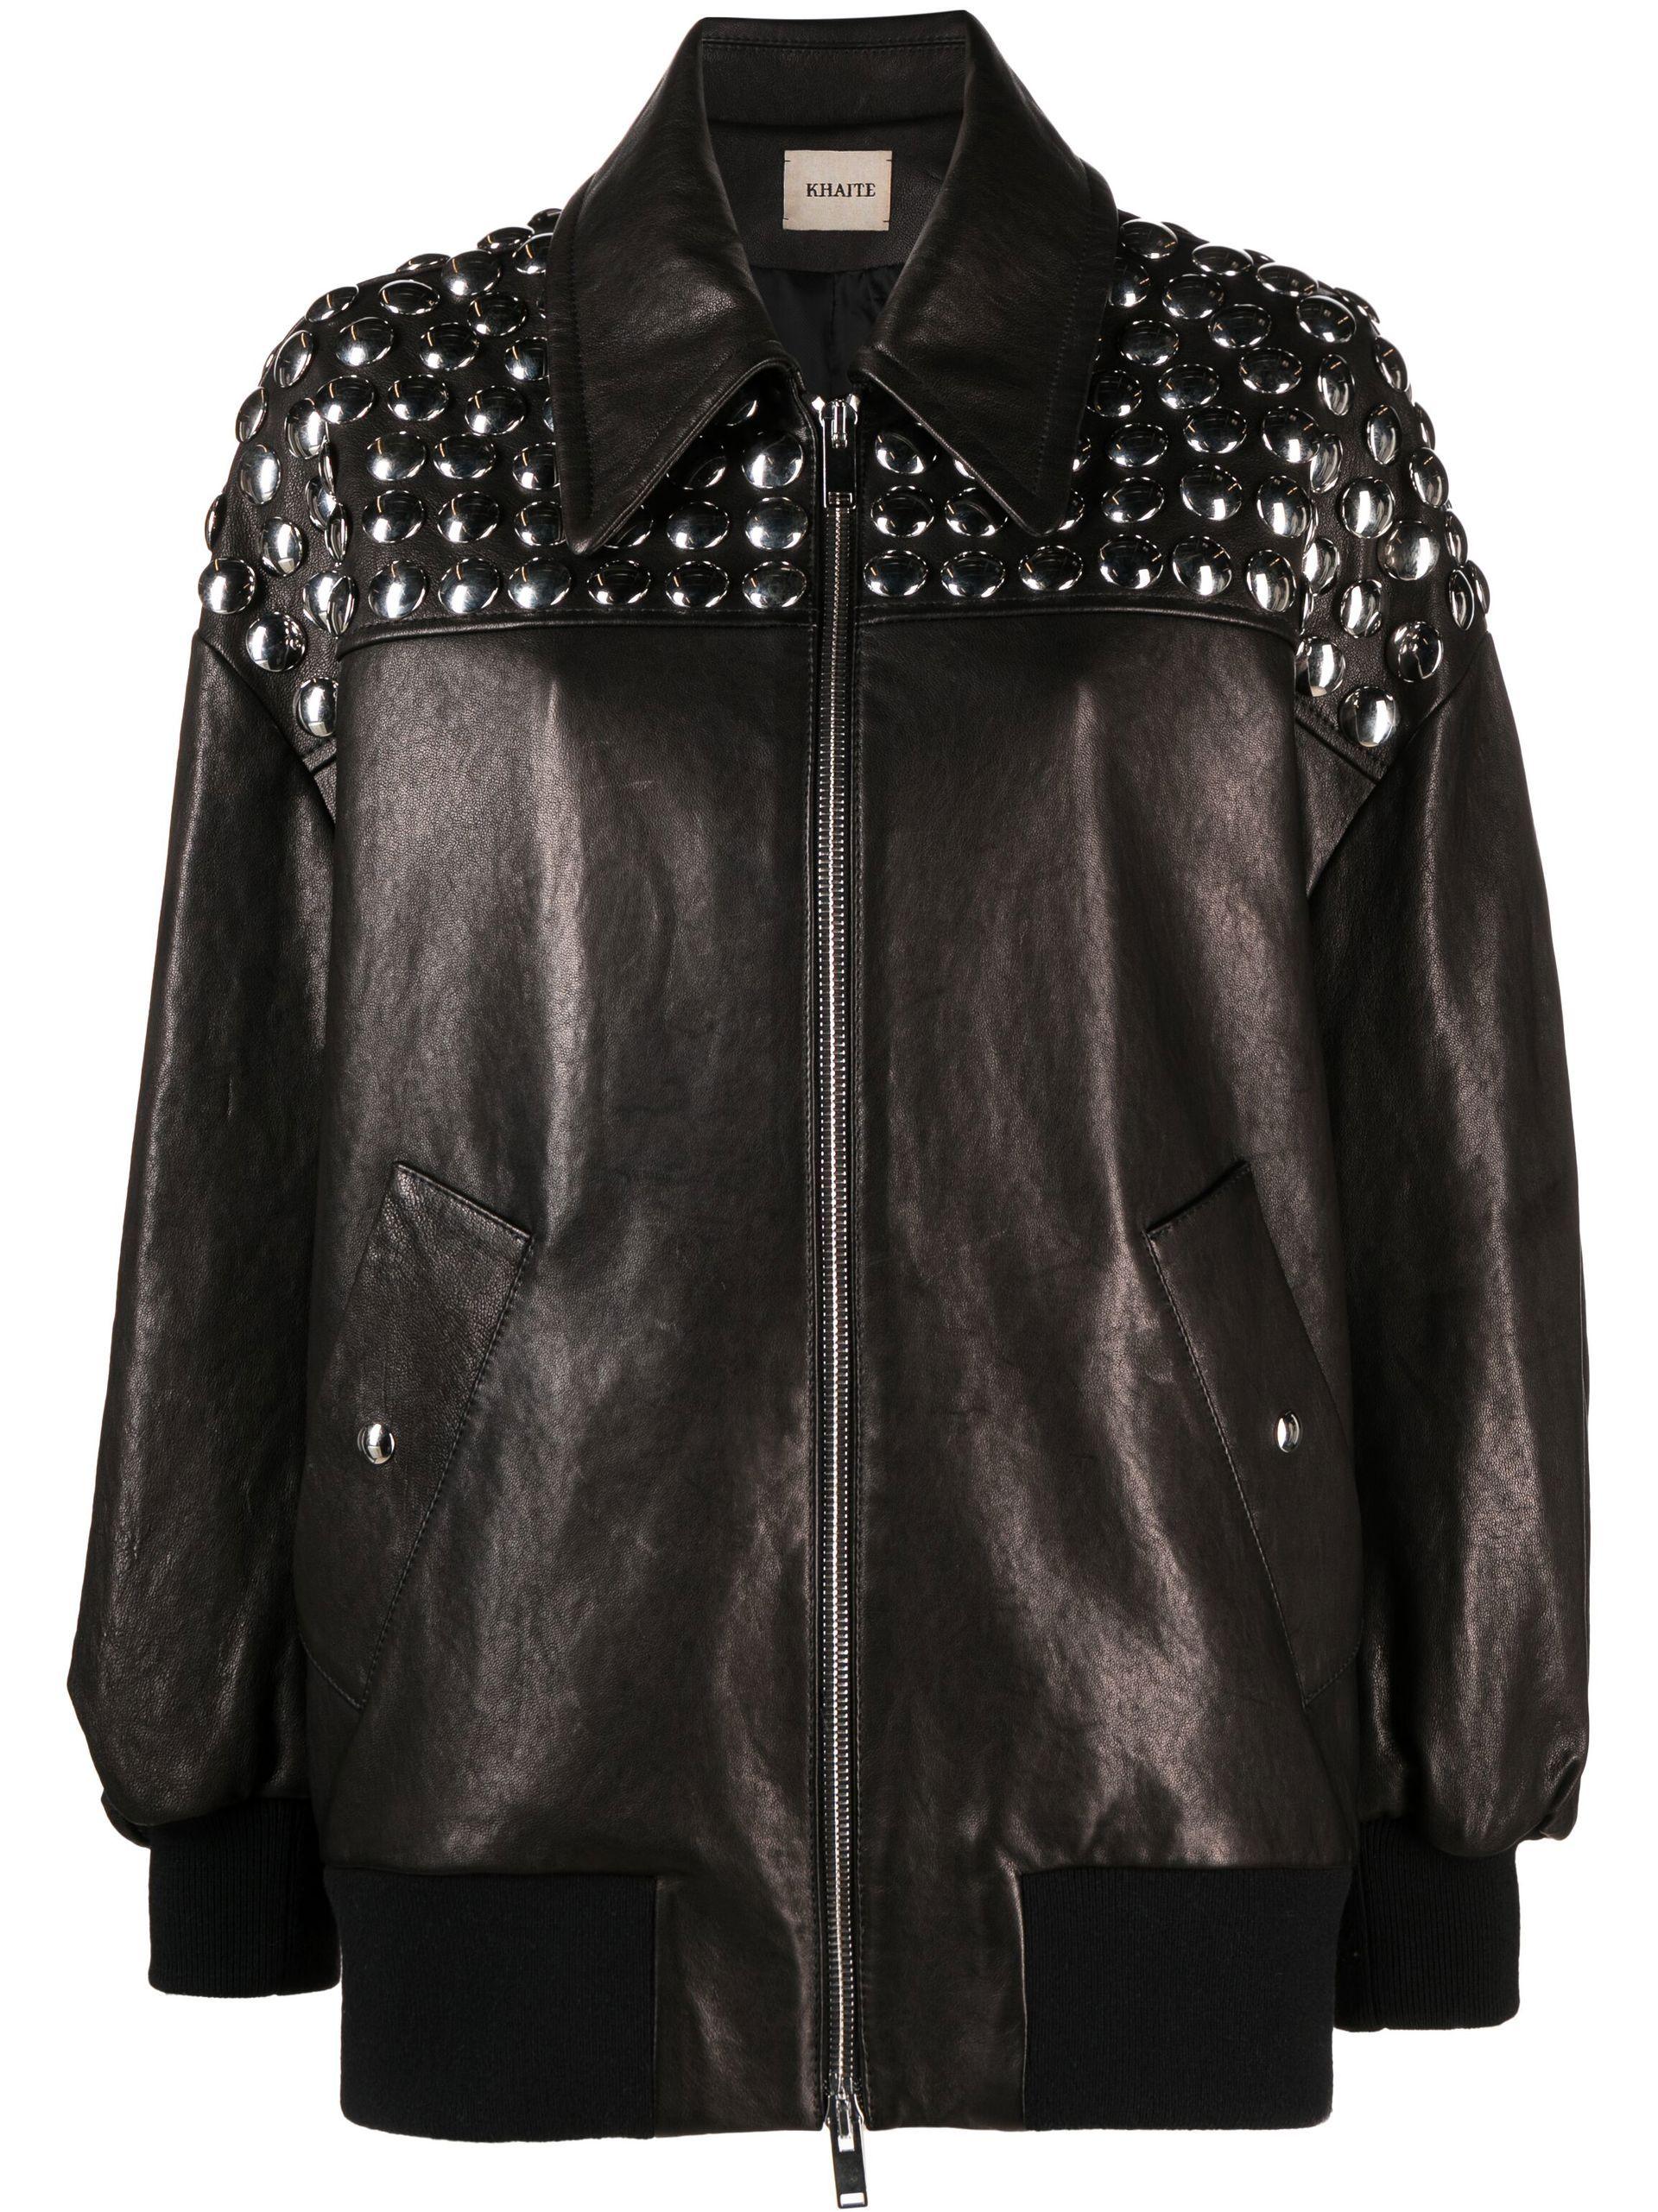 Khaite Ziggy Studded Leather Jacket in Black | Lyst